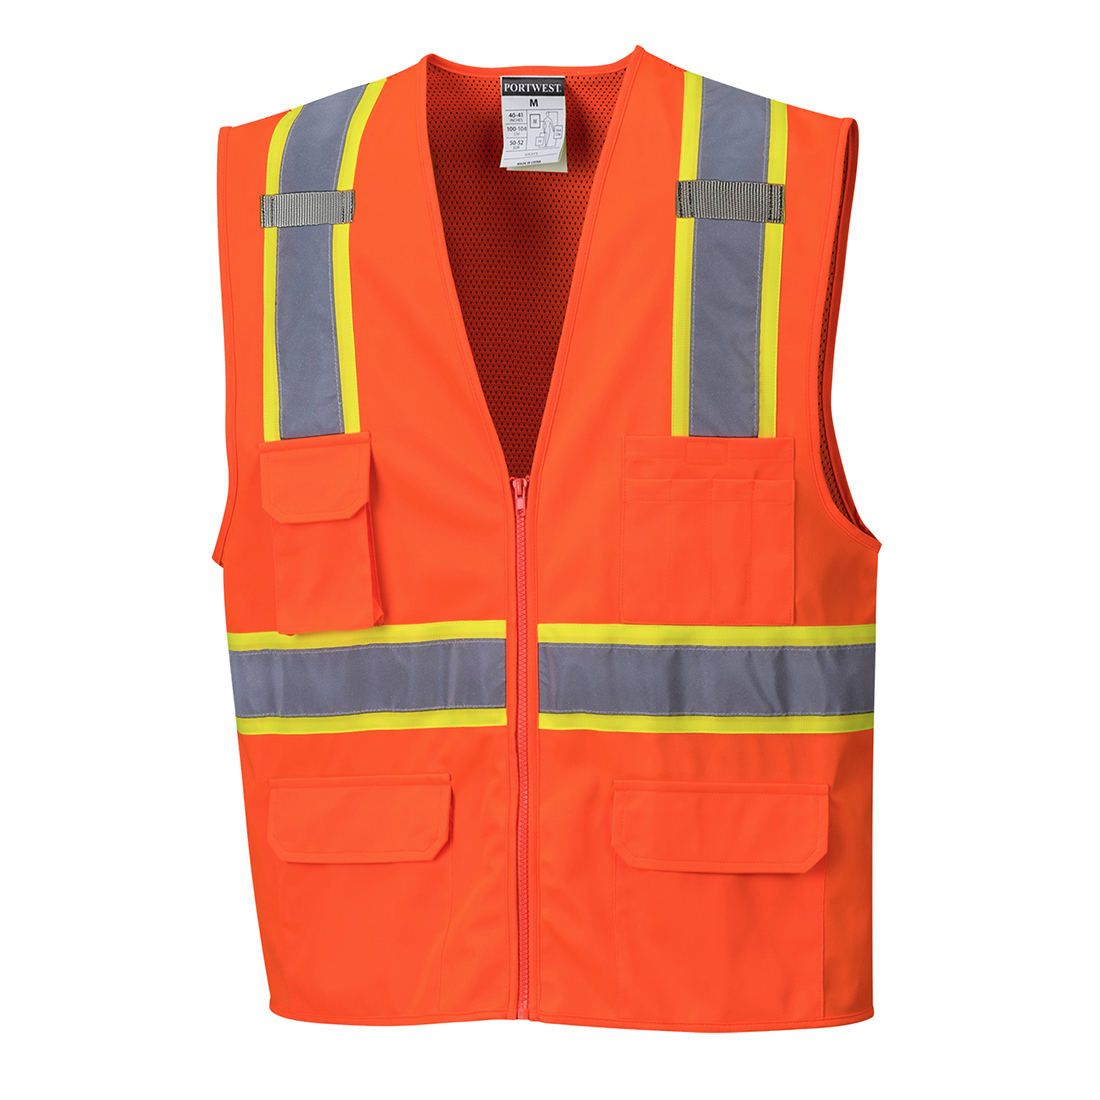 Portwest US370 Atlanta Hi Vis Mesh Safety Vest with Reflective Tape & 6 Pockets 